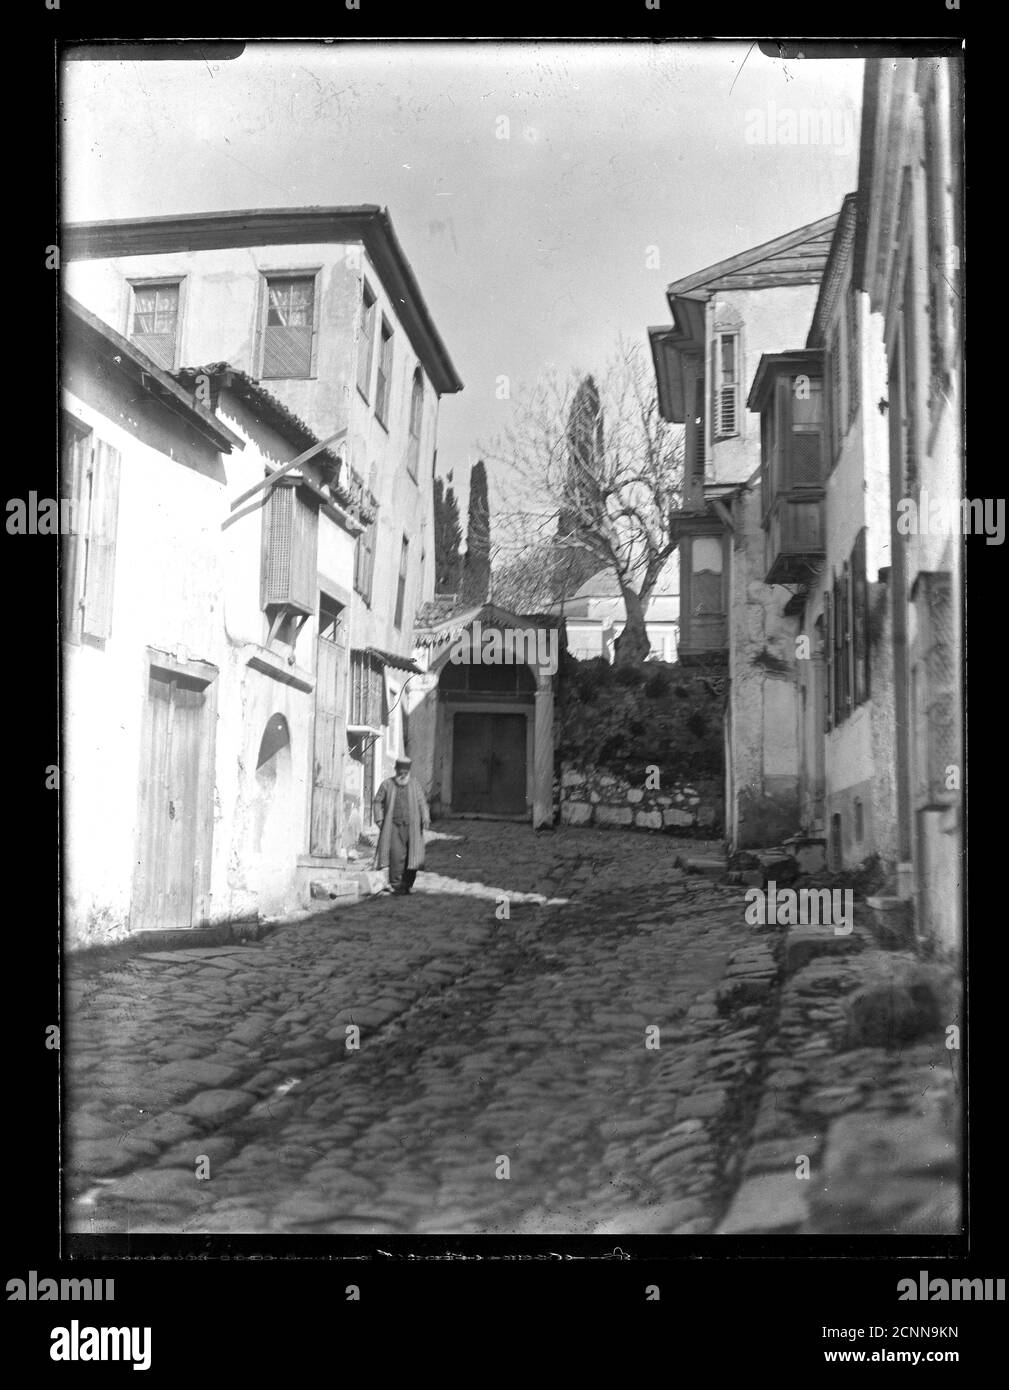 Turquie Izmir Manisa petite ville pavée ruelle, vers 1910 en hiver. Photographie sur une plaque de verre sec de la collection Herry W. Schaefer. Banque D'Images